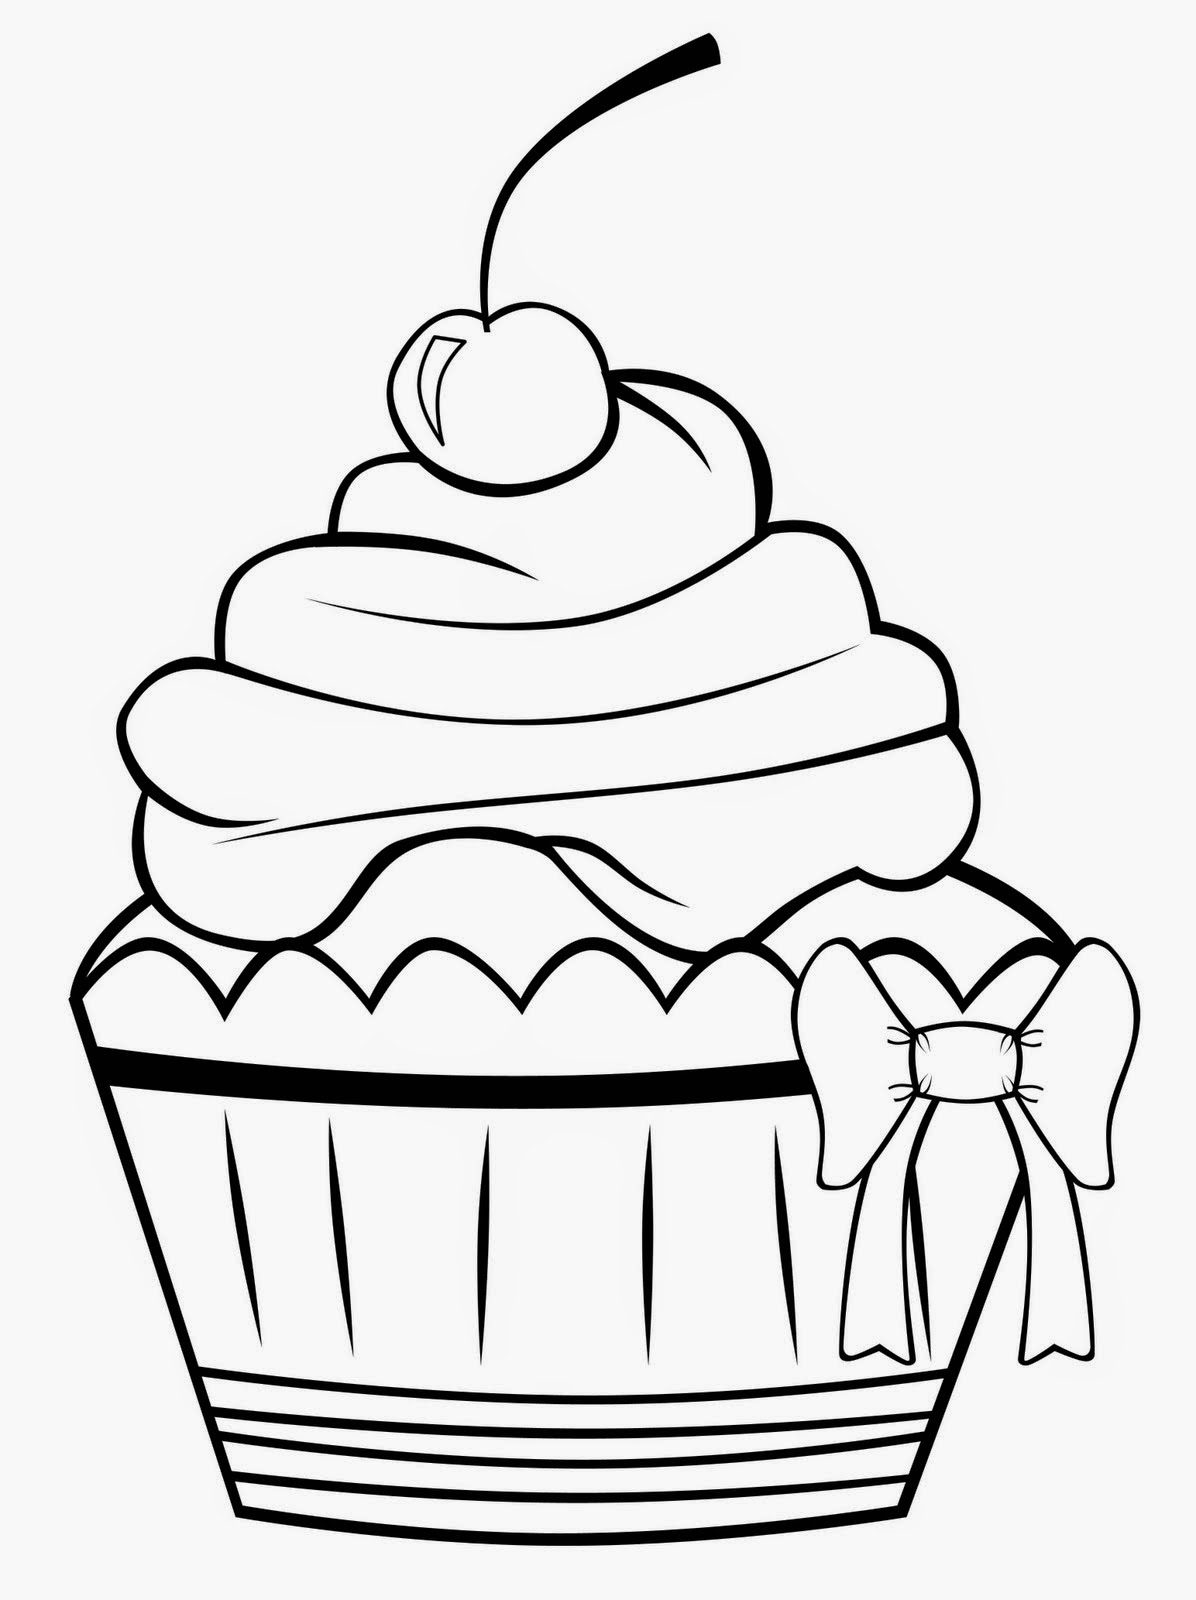 Featured image of post Fotos De Cupcake Para Imprimir : Descubra cupcake imágenes de stock en hd y millones de otras fotos, ilustraciones y vectores en stock libres de regalías en la colección de shutterstock.